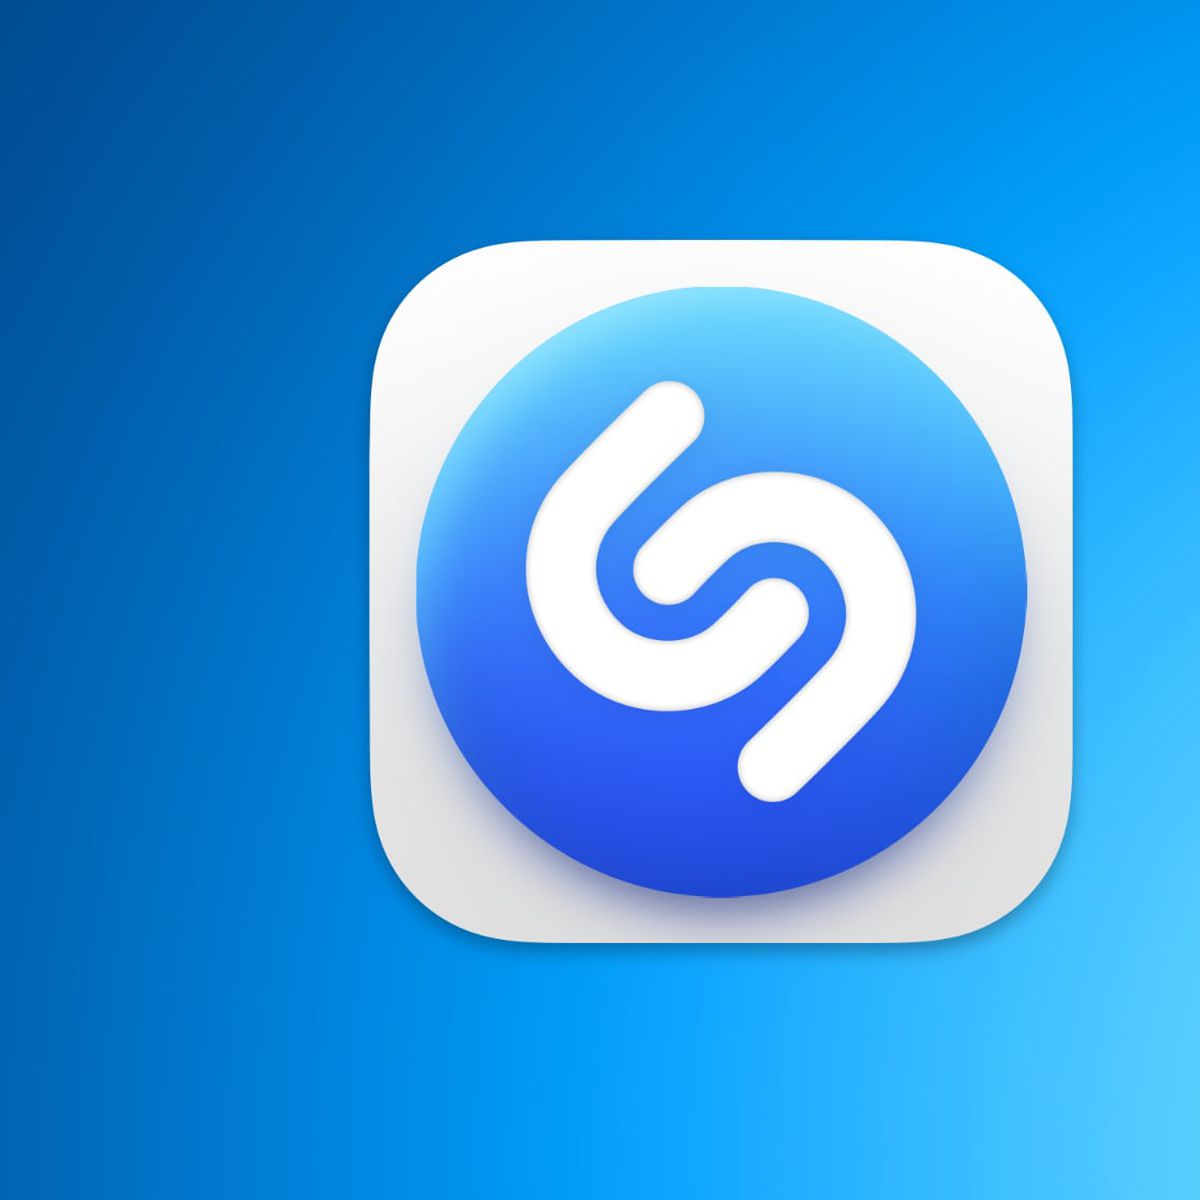 Shazam App for Mac là ứng dụng cần thiết cho những ai yêu thích âm nhạc và muốn tìm kiếm bài hát một cách dễ dàng trên Mac của mình. Với giao diện đơn giản và tính năng tìm kiếm chính xác, Shazam App for Mac là công cụ hỗ trợ tuyệt vời cho những ai muốn tìm hiểu và phát triển sở thích âm nhạc của mình.